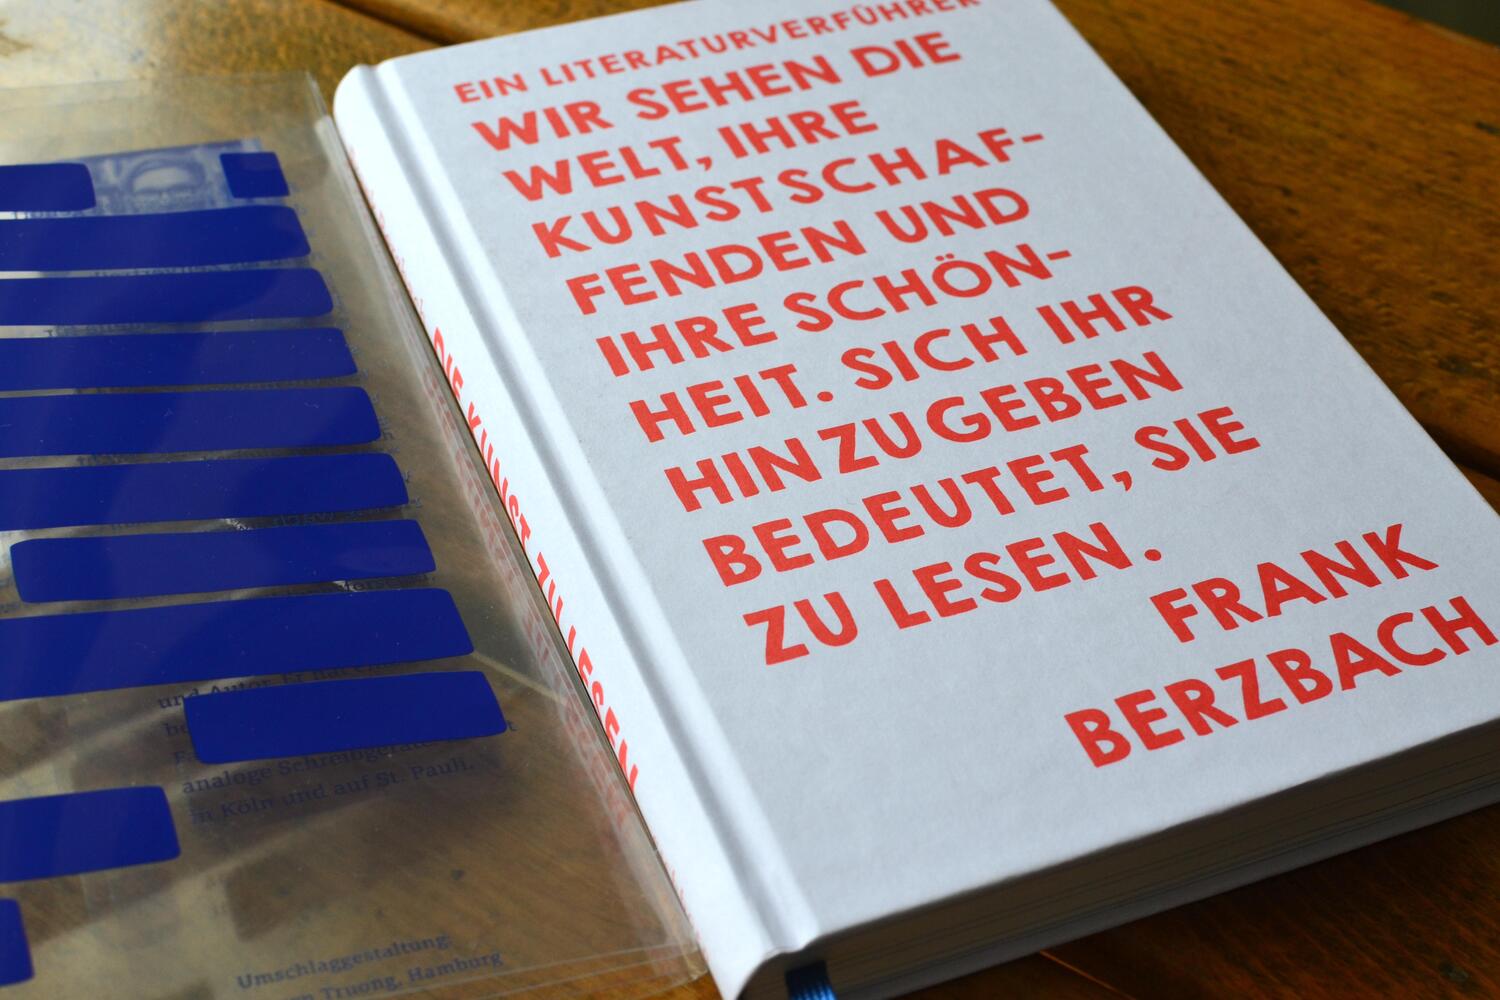 Bild: 9783847900887 | Die Kunst zu lesen | Ein Literaturverführer | Frank Berzbach | Buch